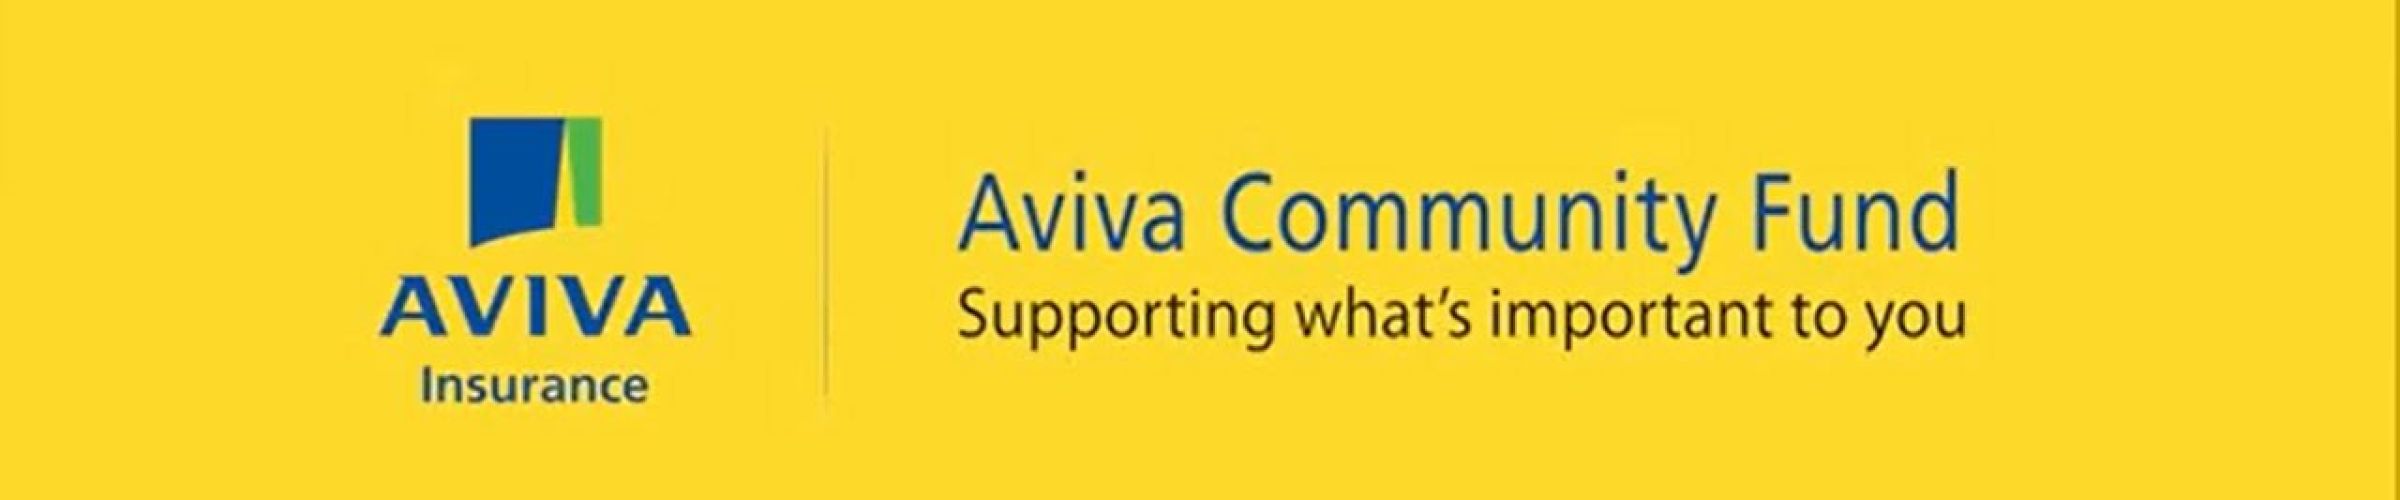 CDEC's Aviva Community Fund